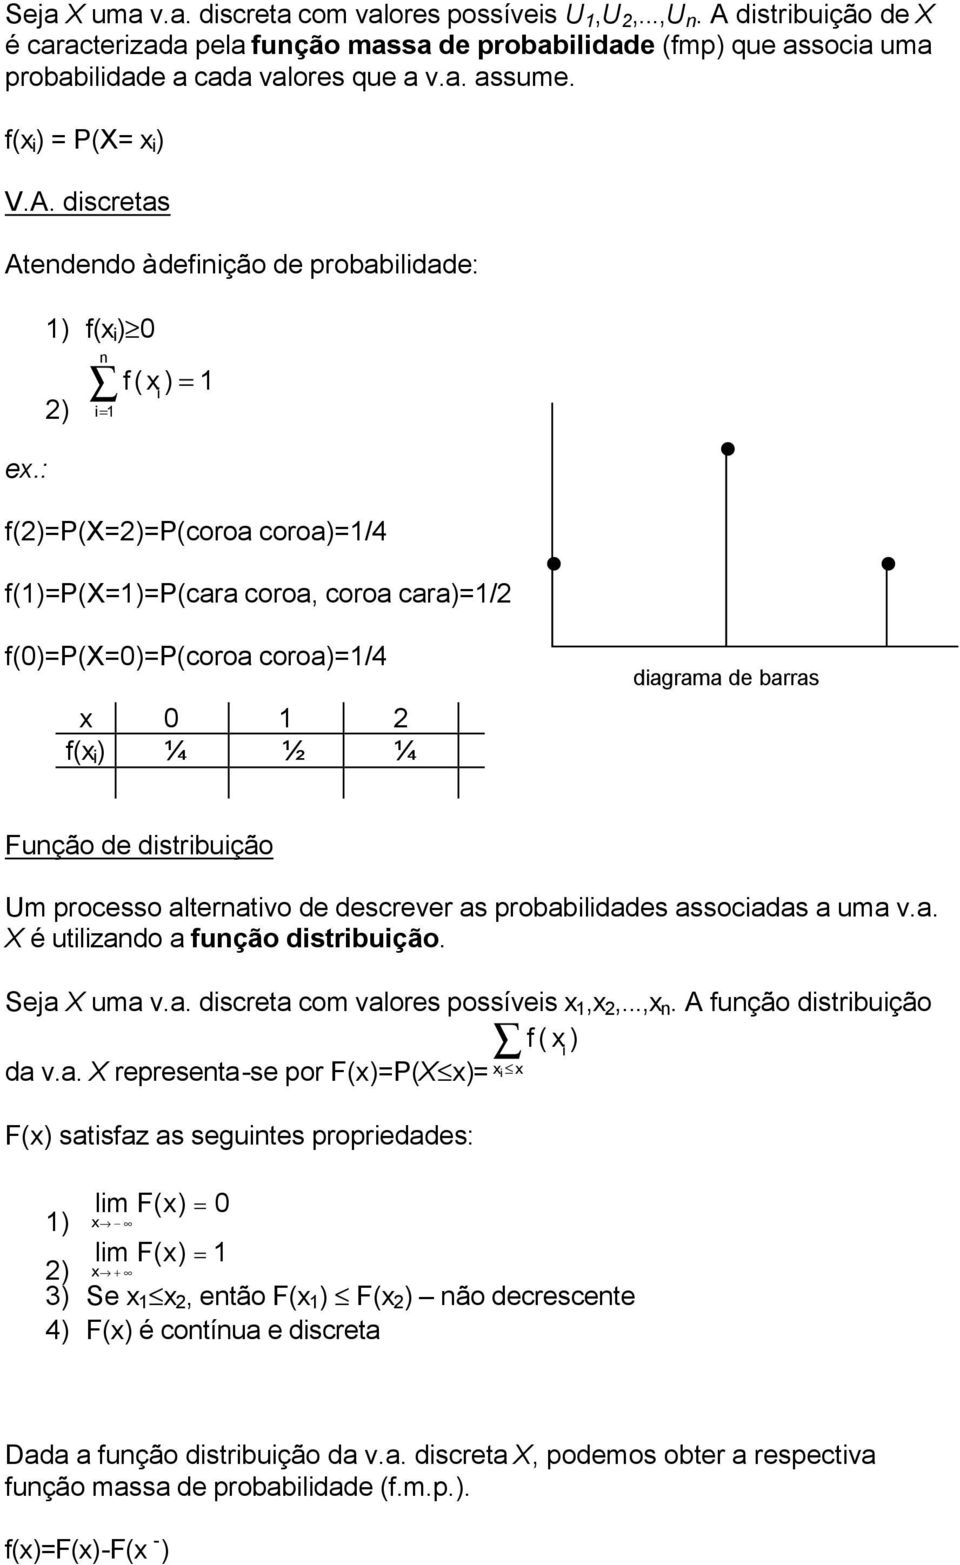 : ) f( i ) 0 n i 2) f() i f(2)p(x2)p(coroa coroa)/4 f()p(x)p(cara coroa, coroa cara)/2 f(0)p(x0)p(coroa coroa)/4 0 2 f( i ) ¼ ½ ¼ diagrama de barras Função de distribuição Um processo alternativo de